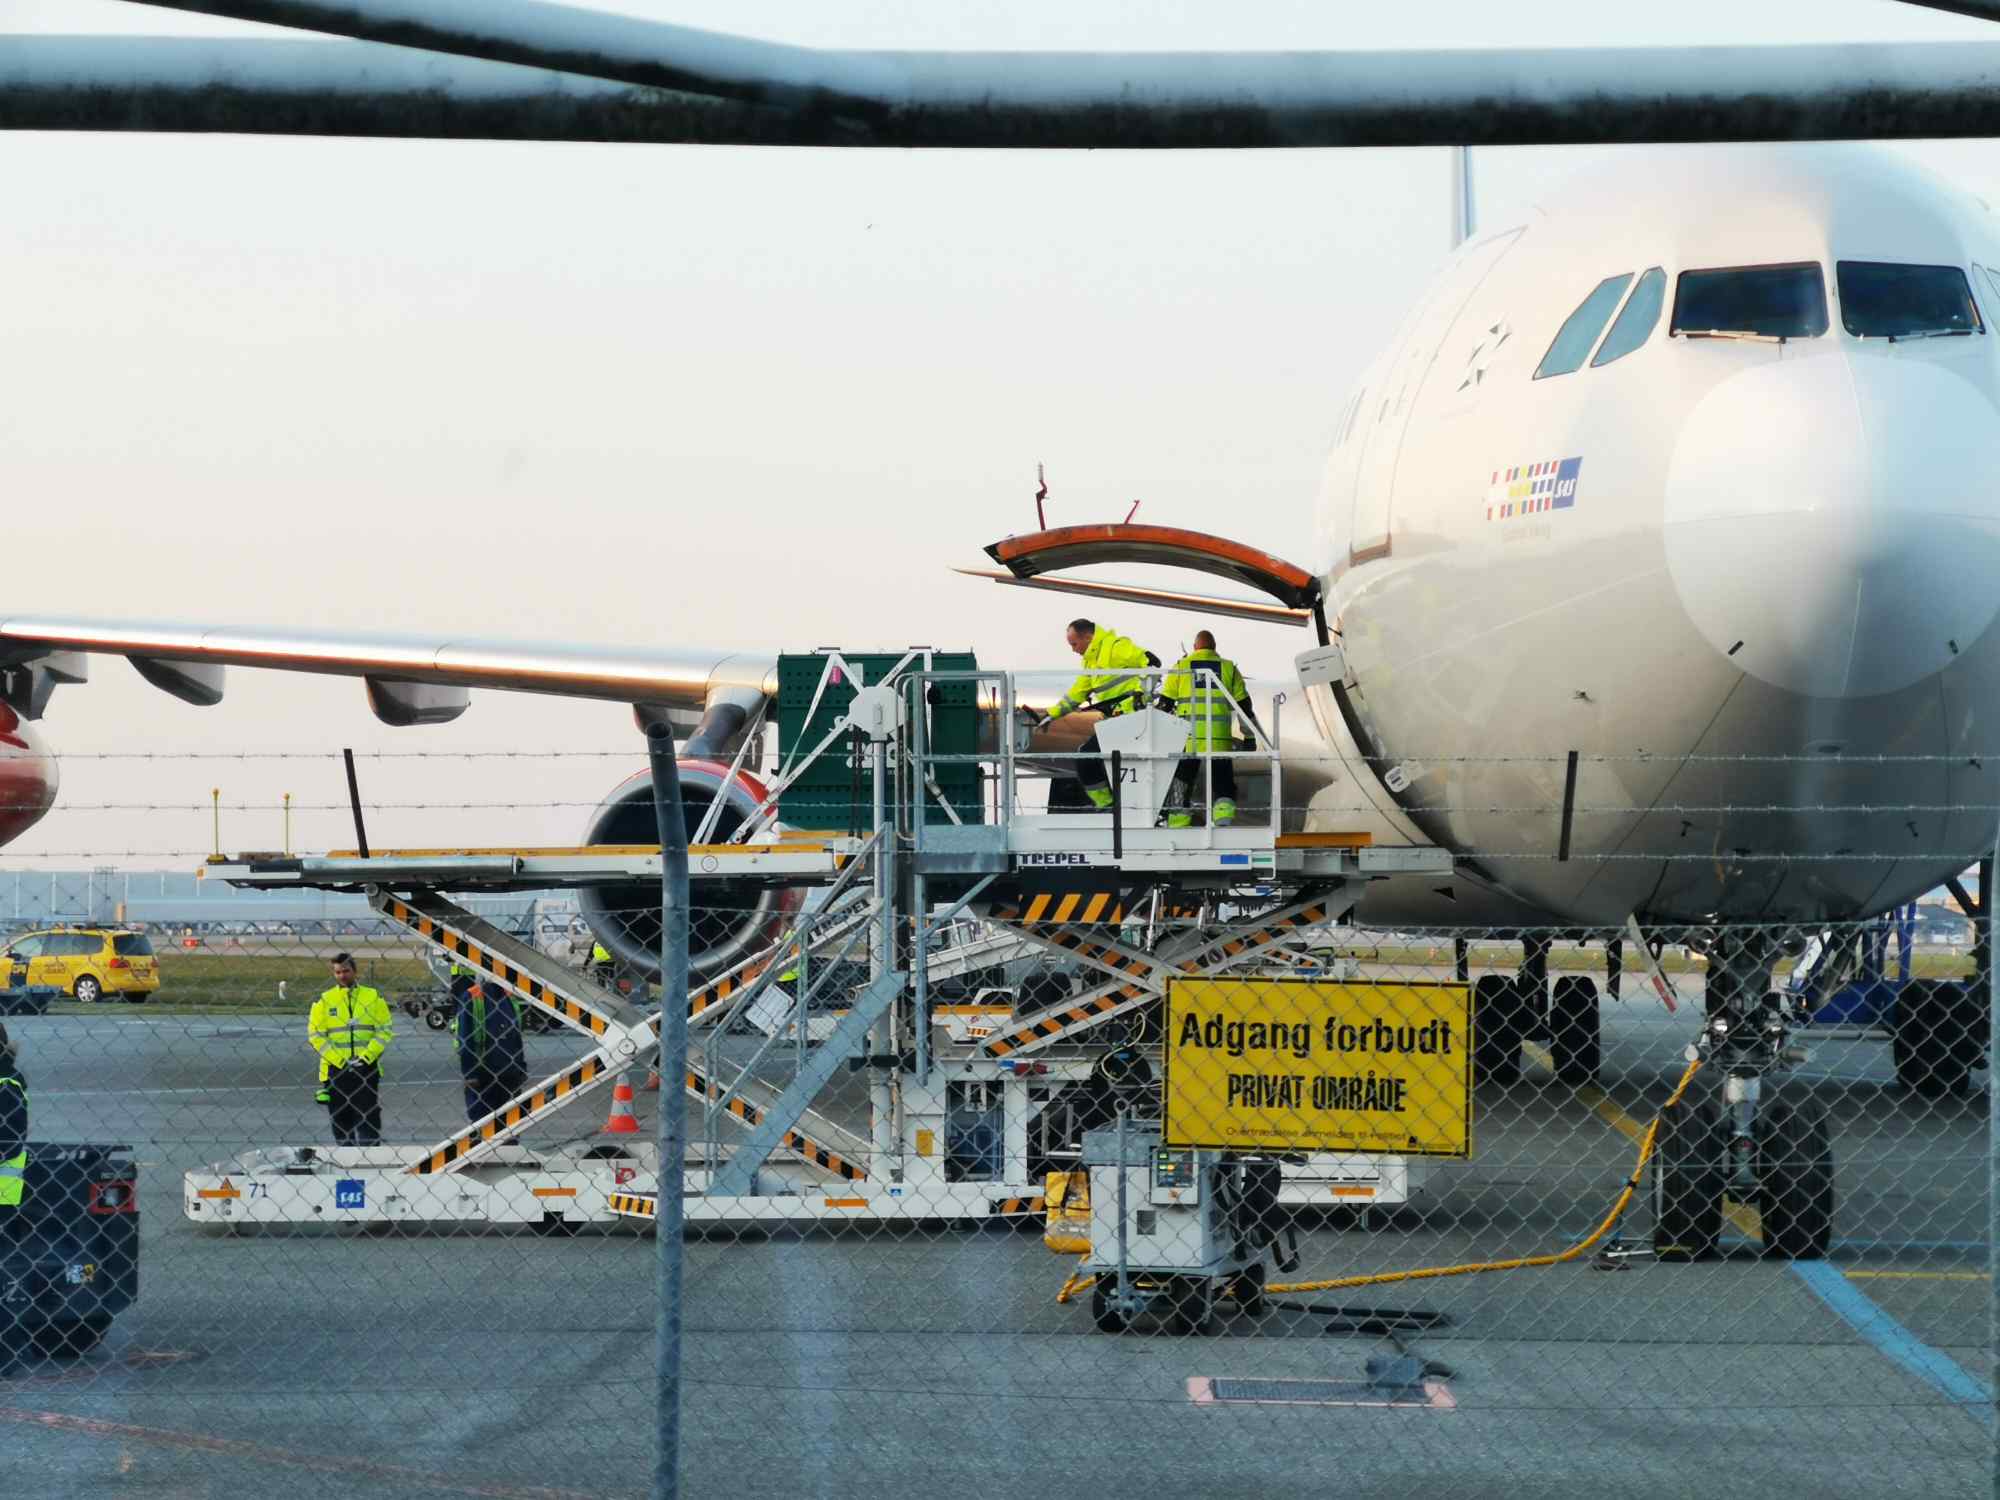 Una amenaza de bomba para un aeropuerto en Dinamarca: un detenido y cientos de agentes buscando el explosivo